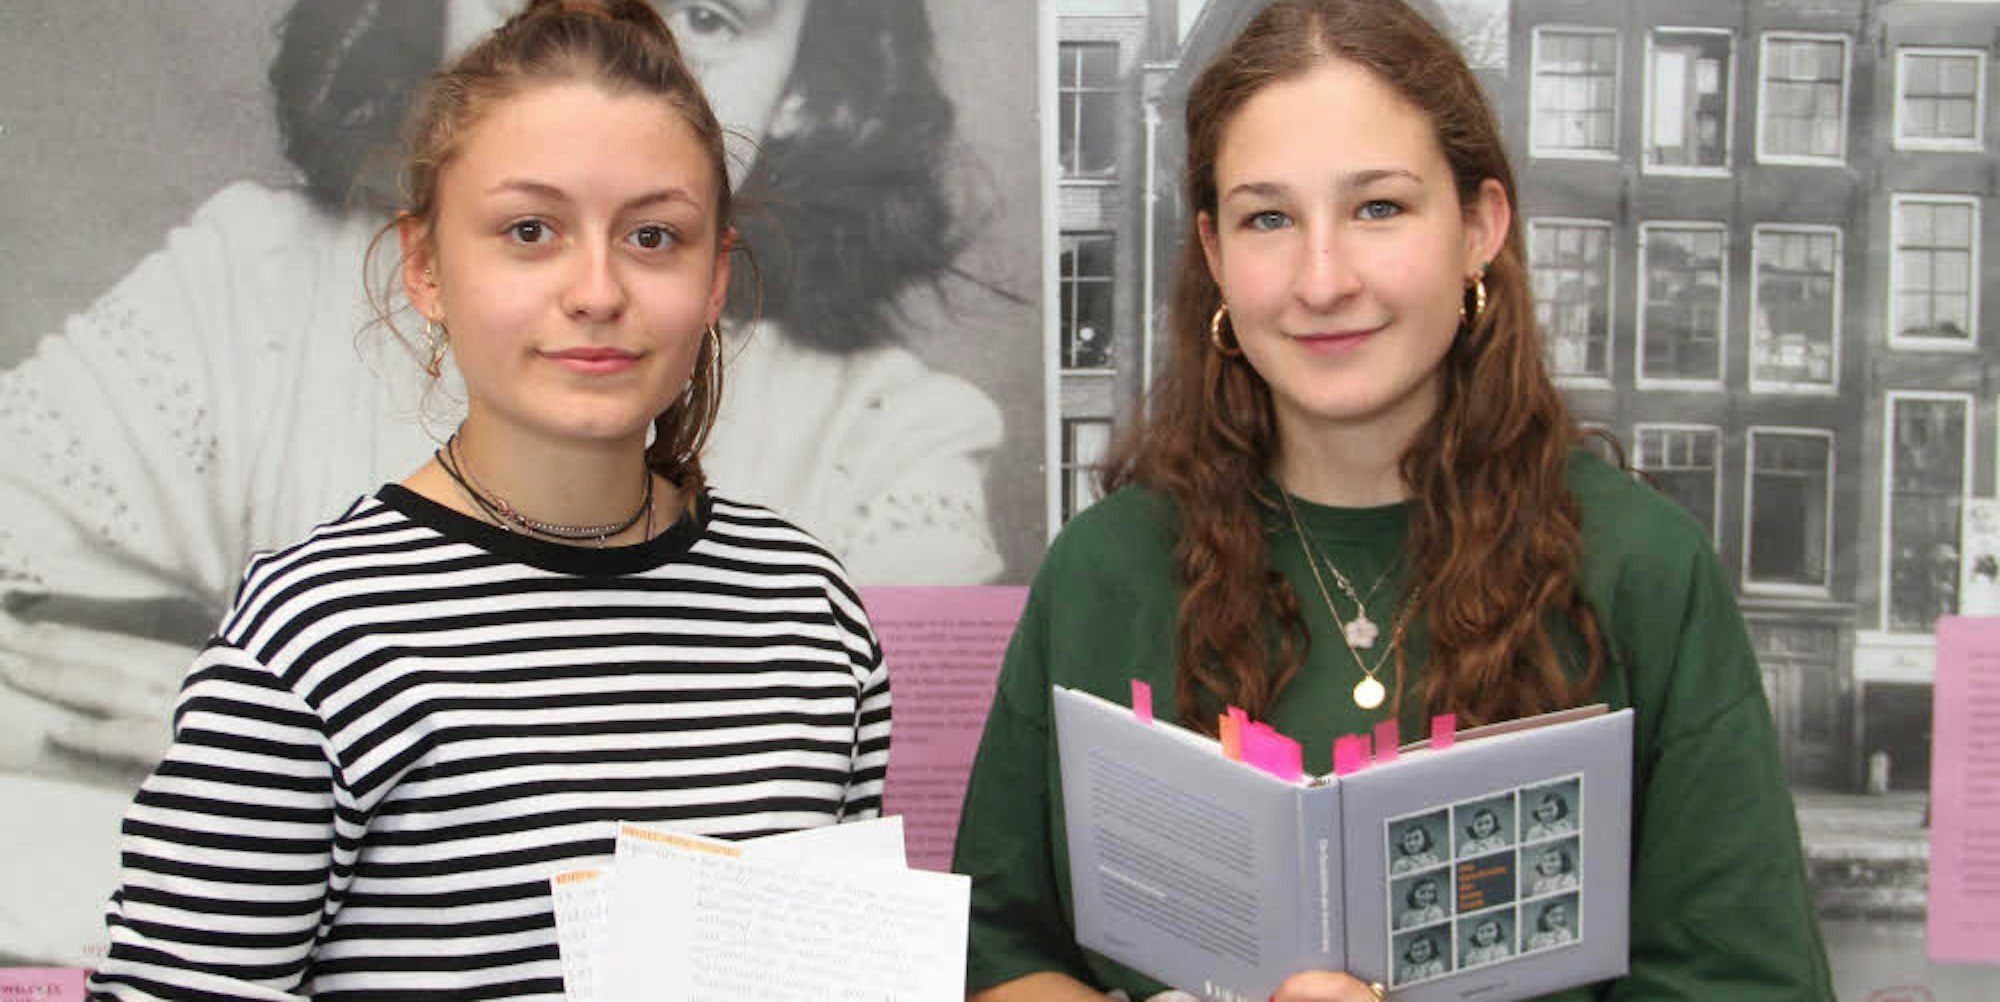 Versiert: Ronja (l.) und Merit richteten mit einem Referat über Anne Frank den Fokus auf die Unterdrückung von Grundrechten während der nationalsozialistischen Herrschaft.